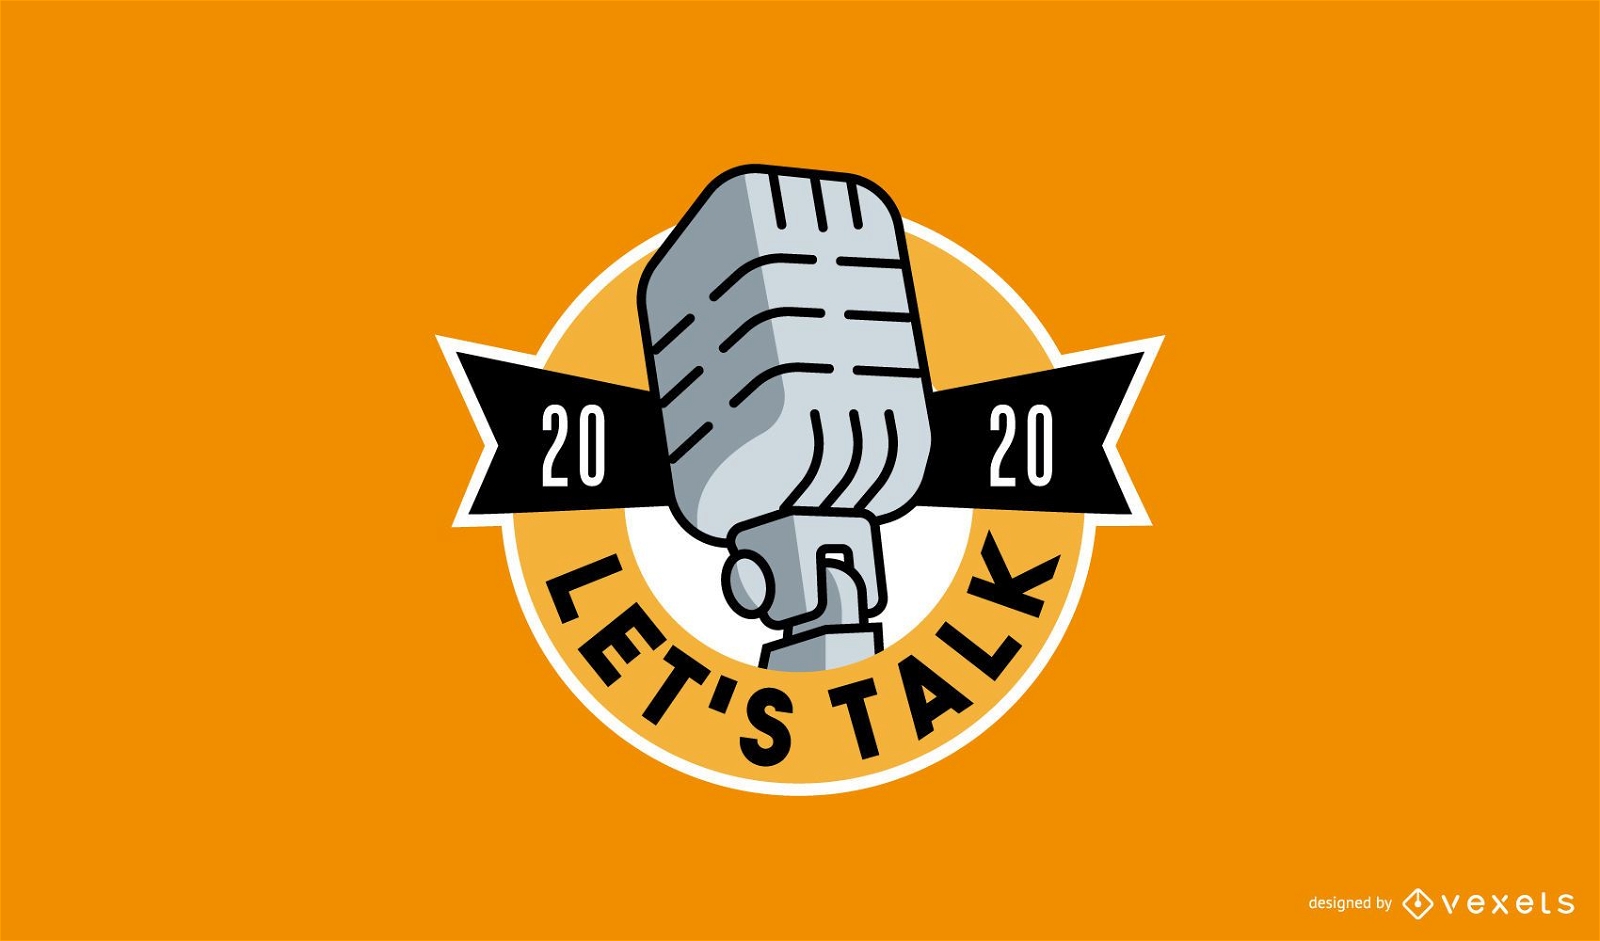 Logotipo do podcast de estilo retro